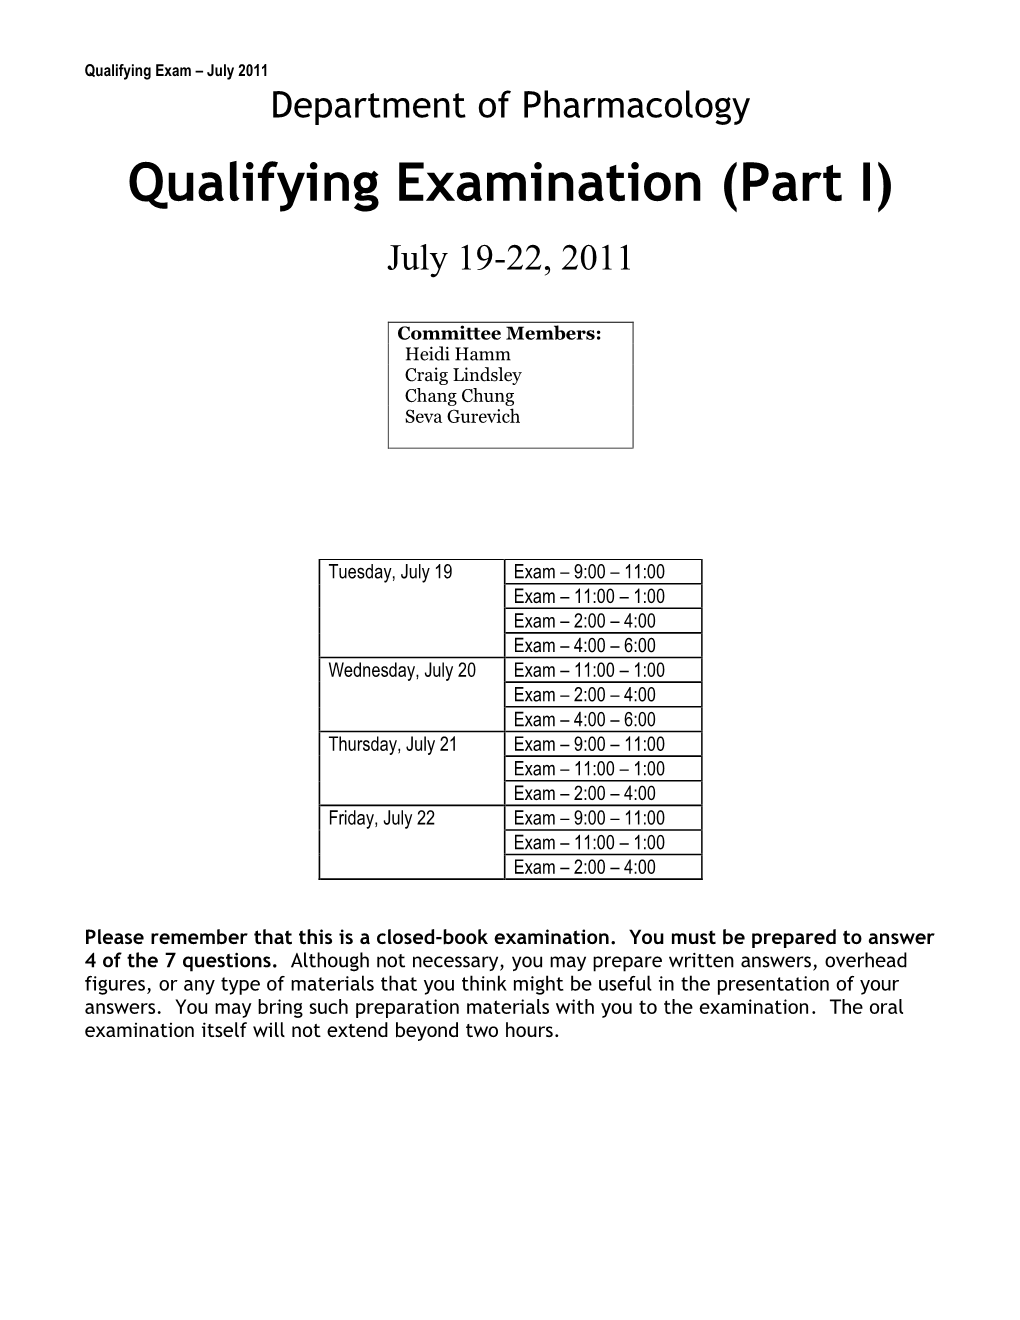 Pharmacology Qualifying Exam, June 2003